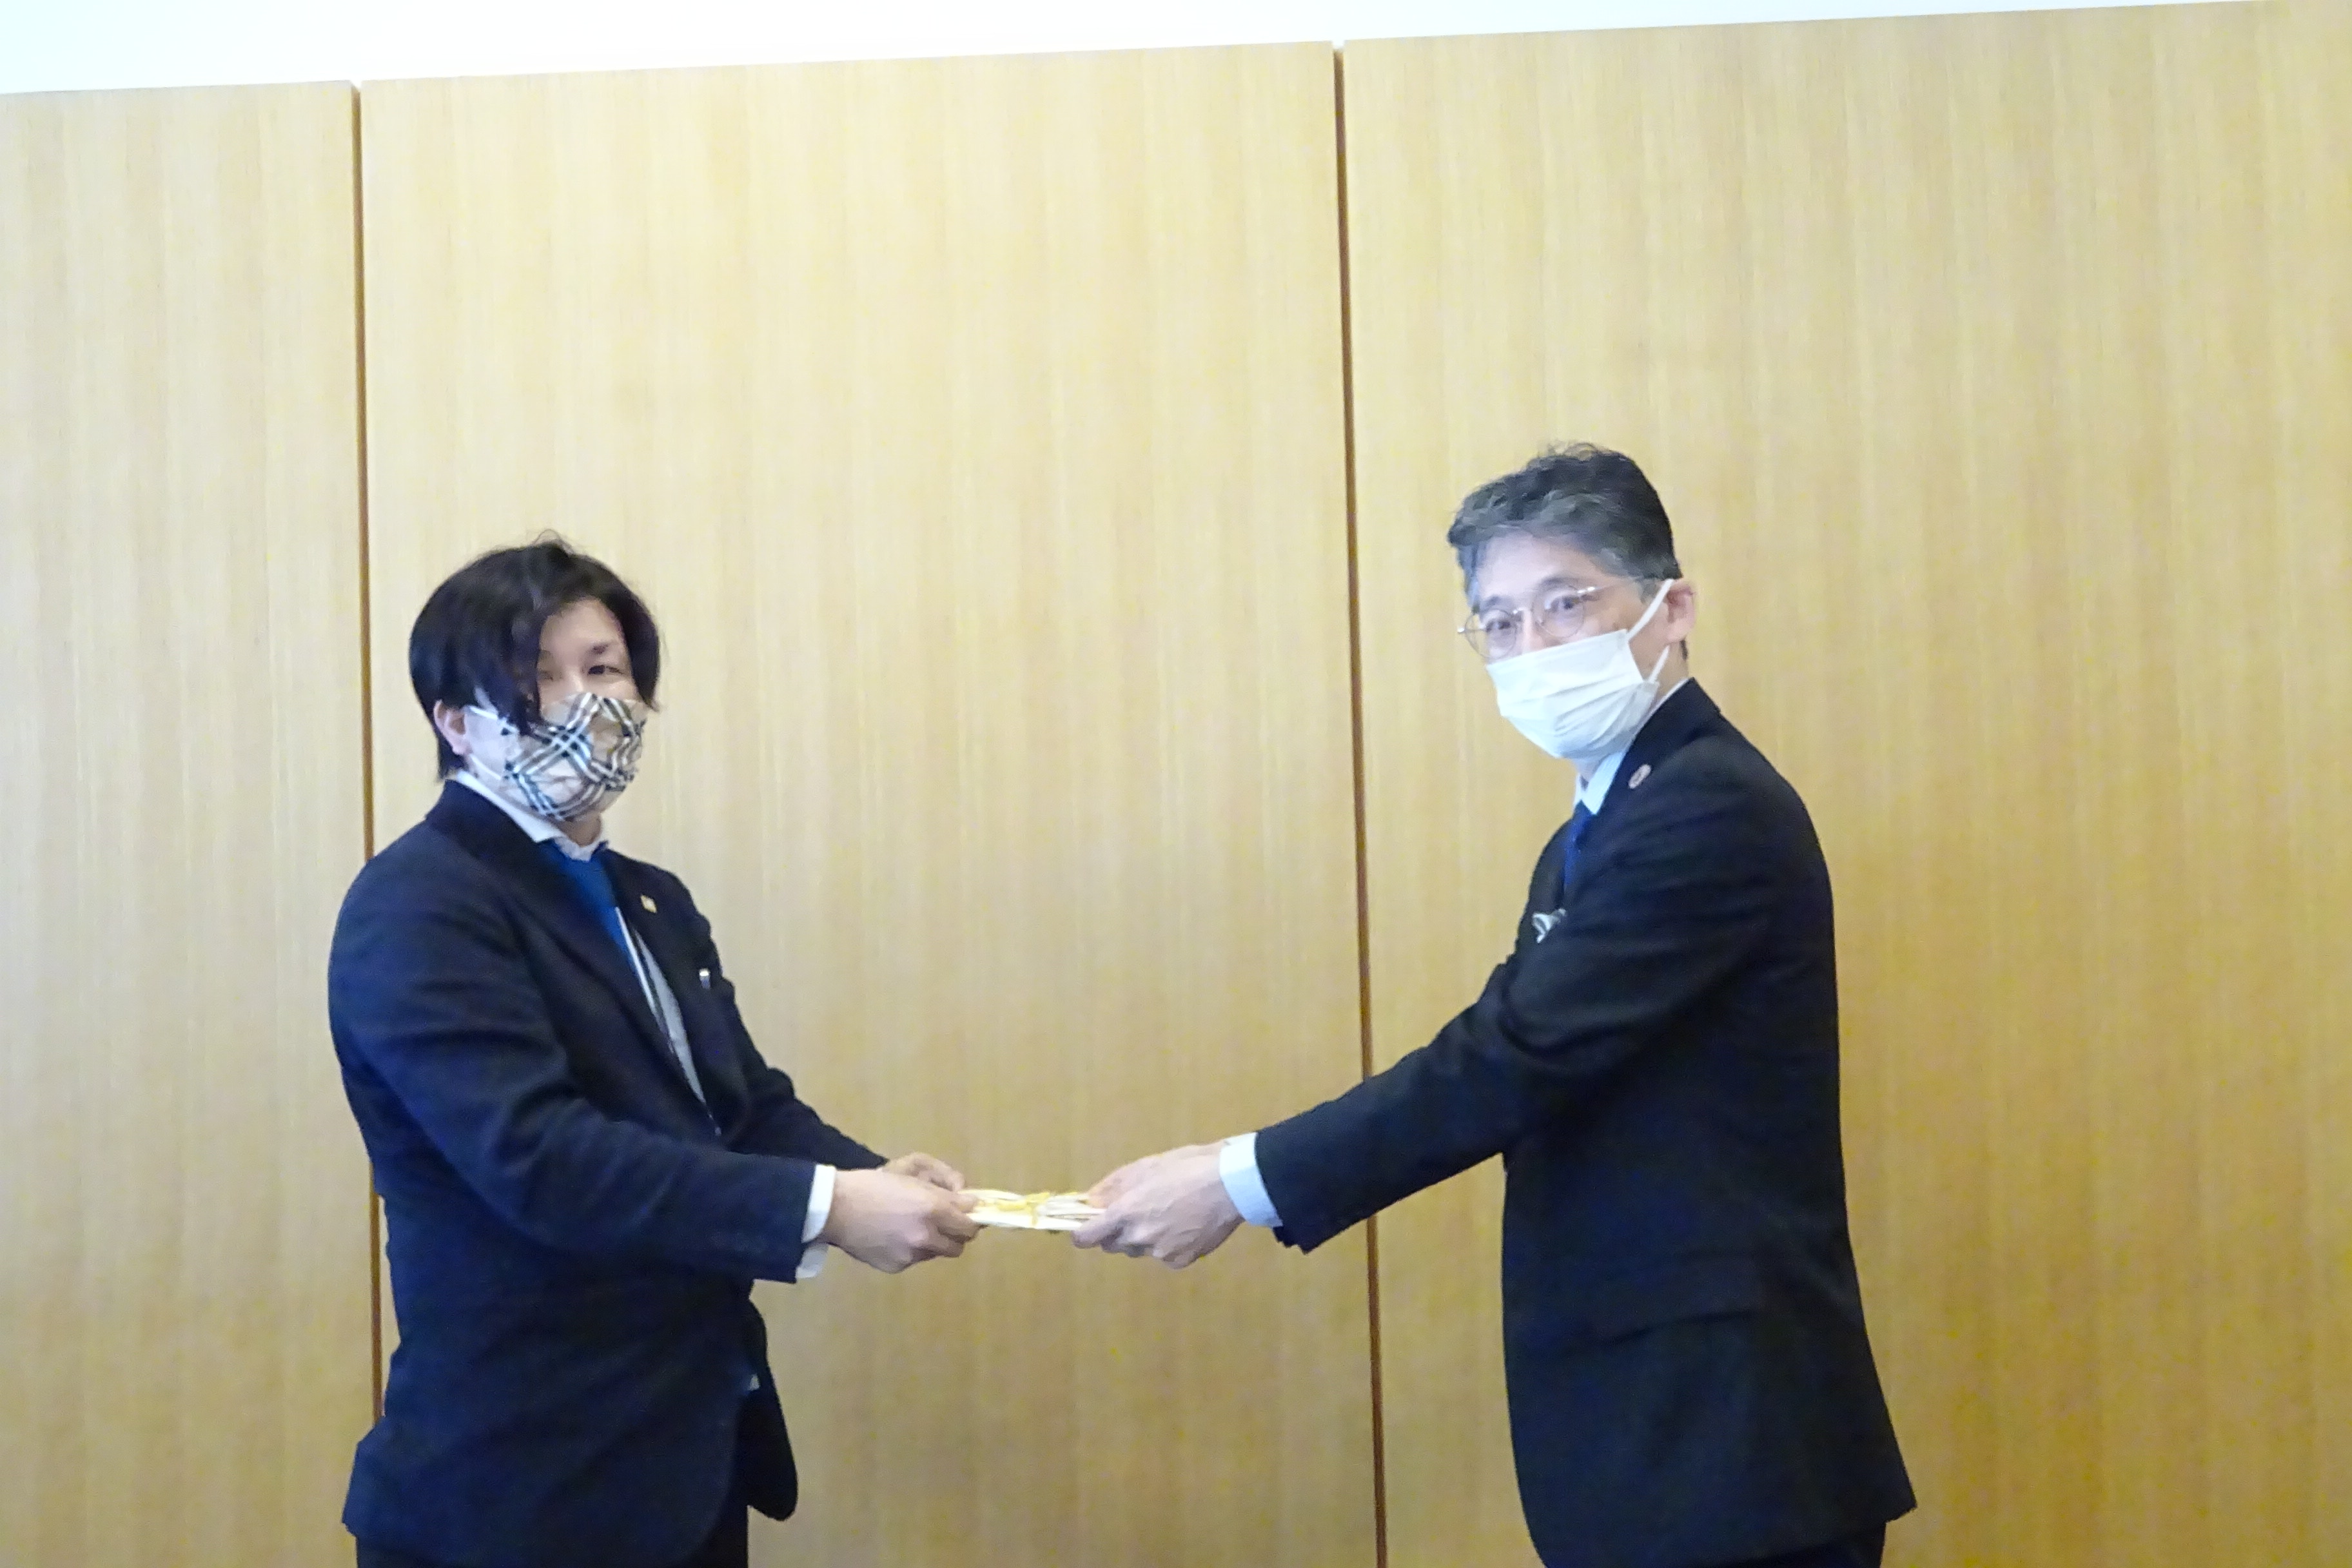 村上代表取締役（左）から目録を贈呈される黒田工学部長の画像